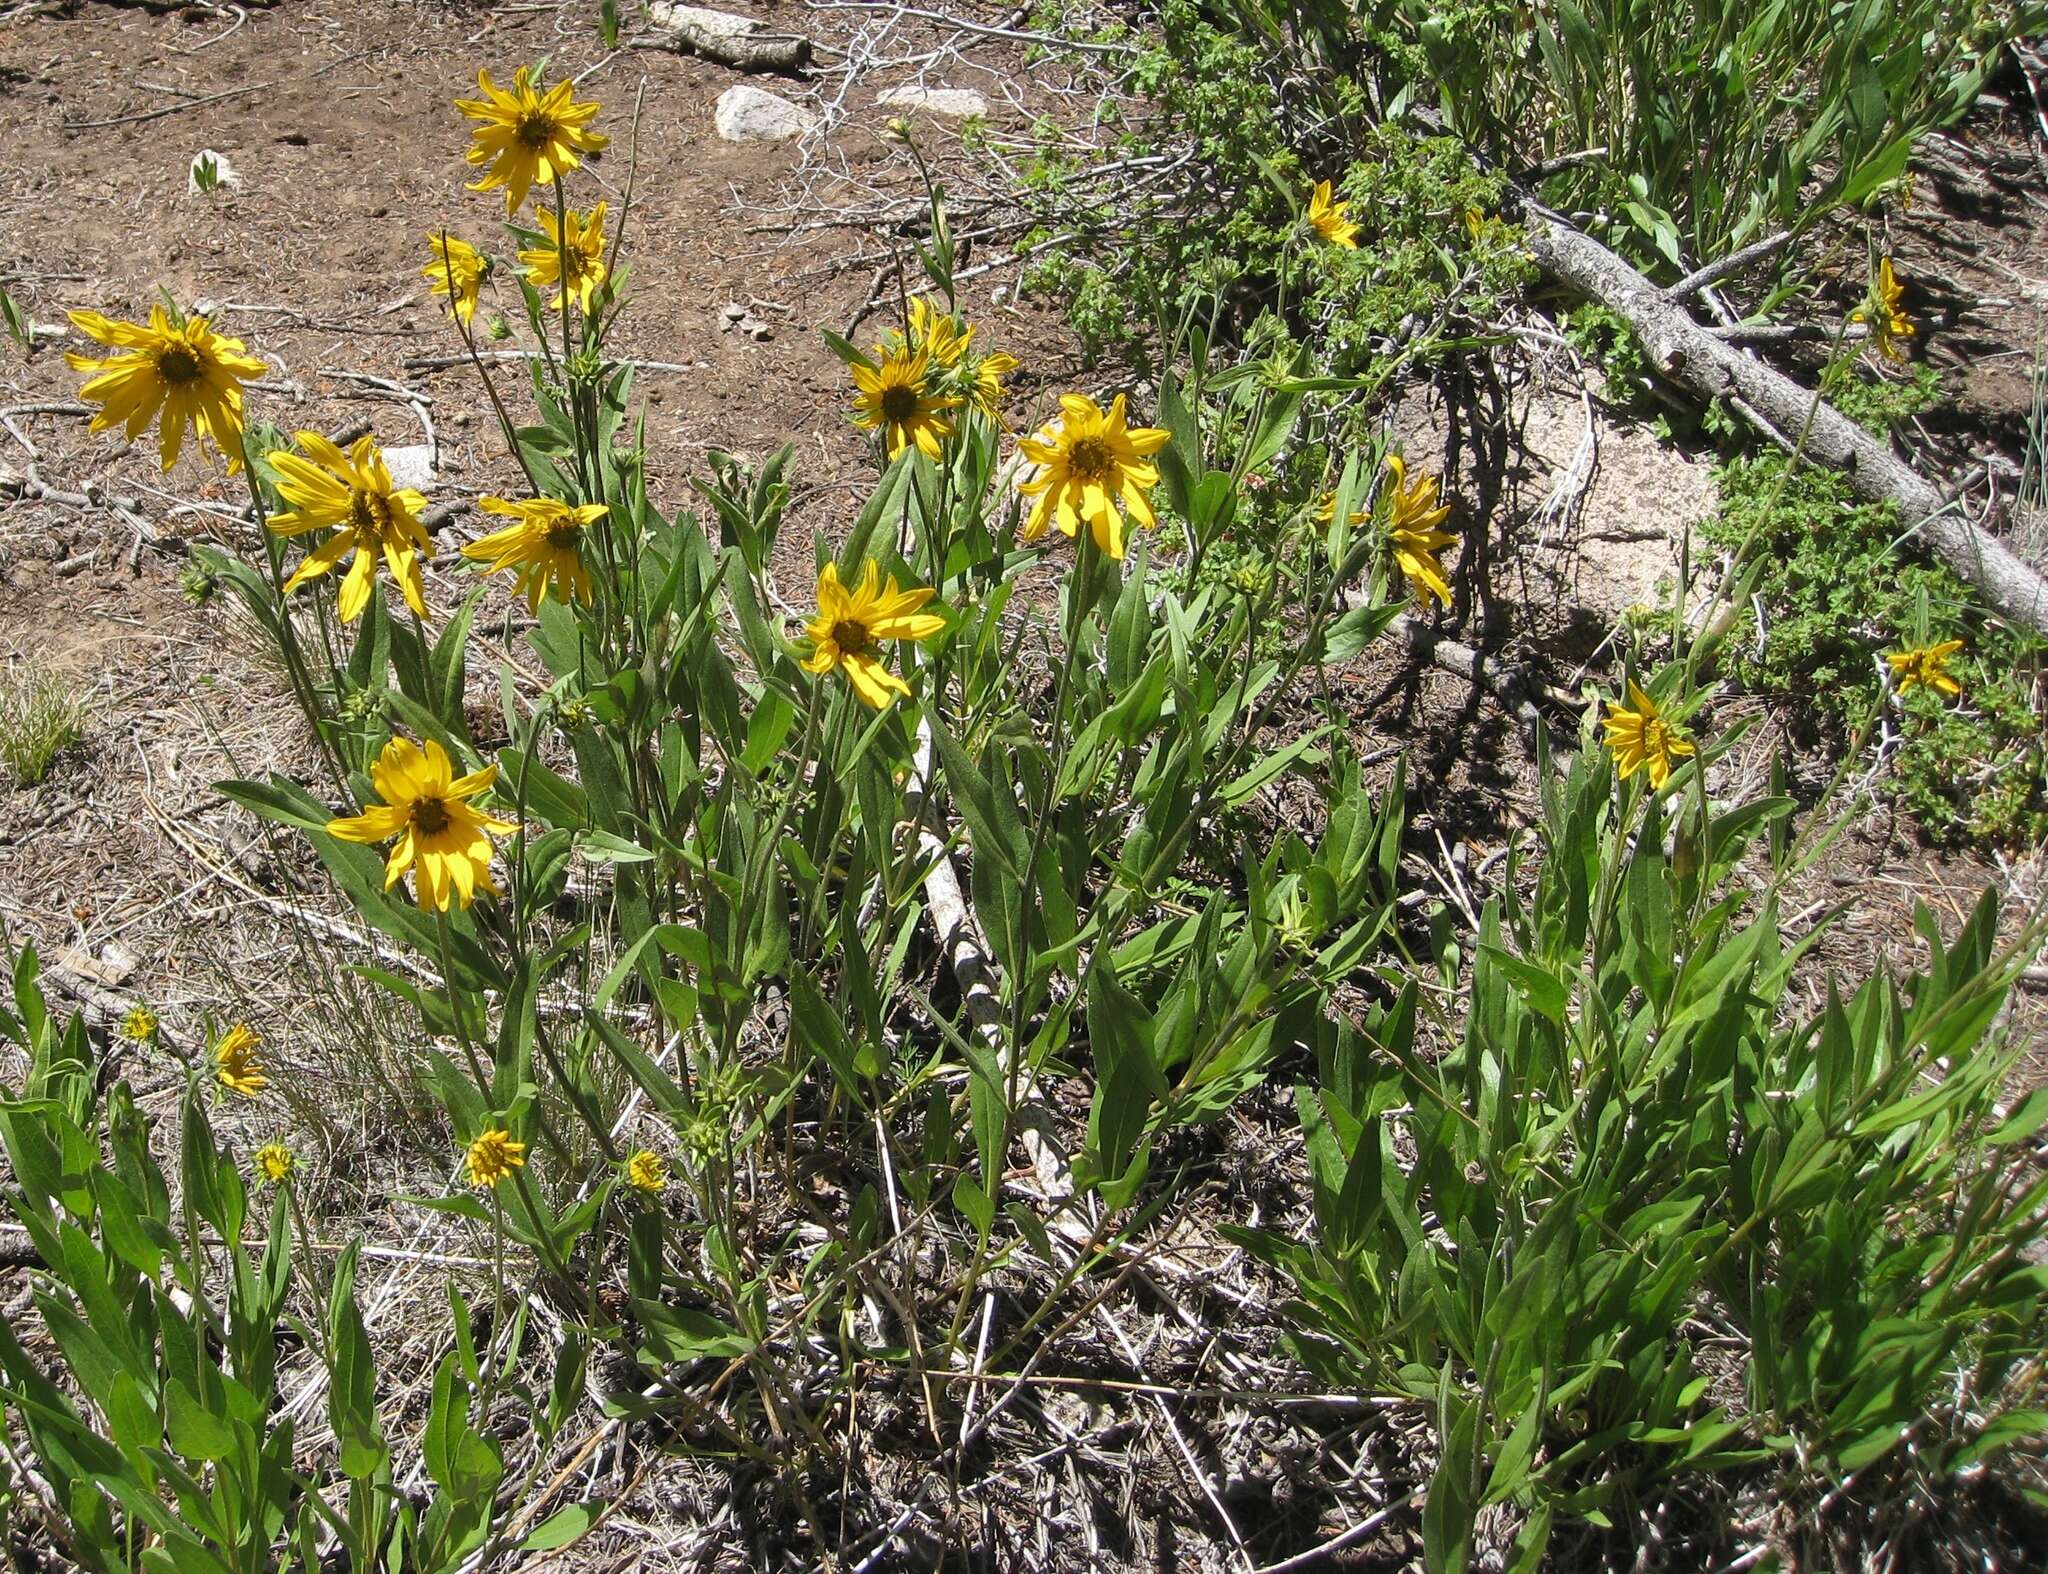 Image of oneflower helianthella